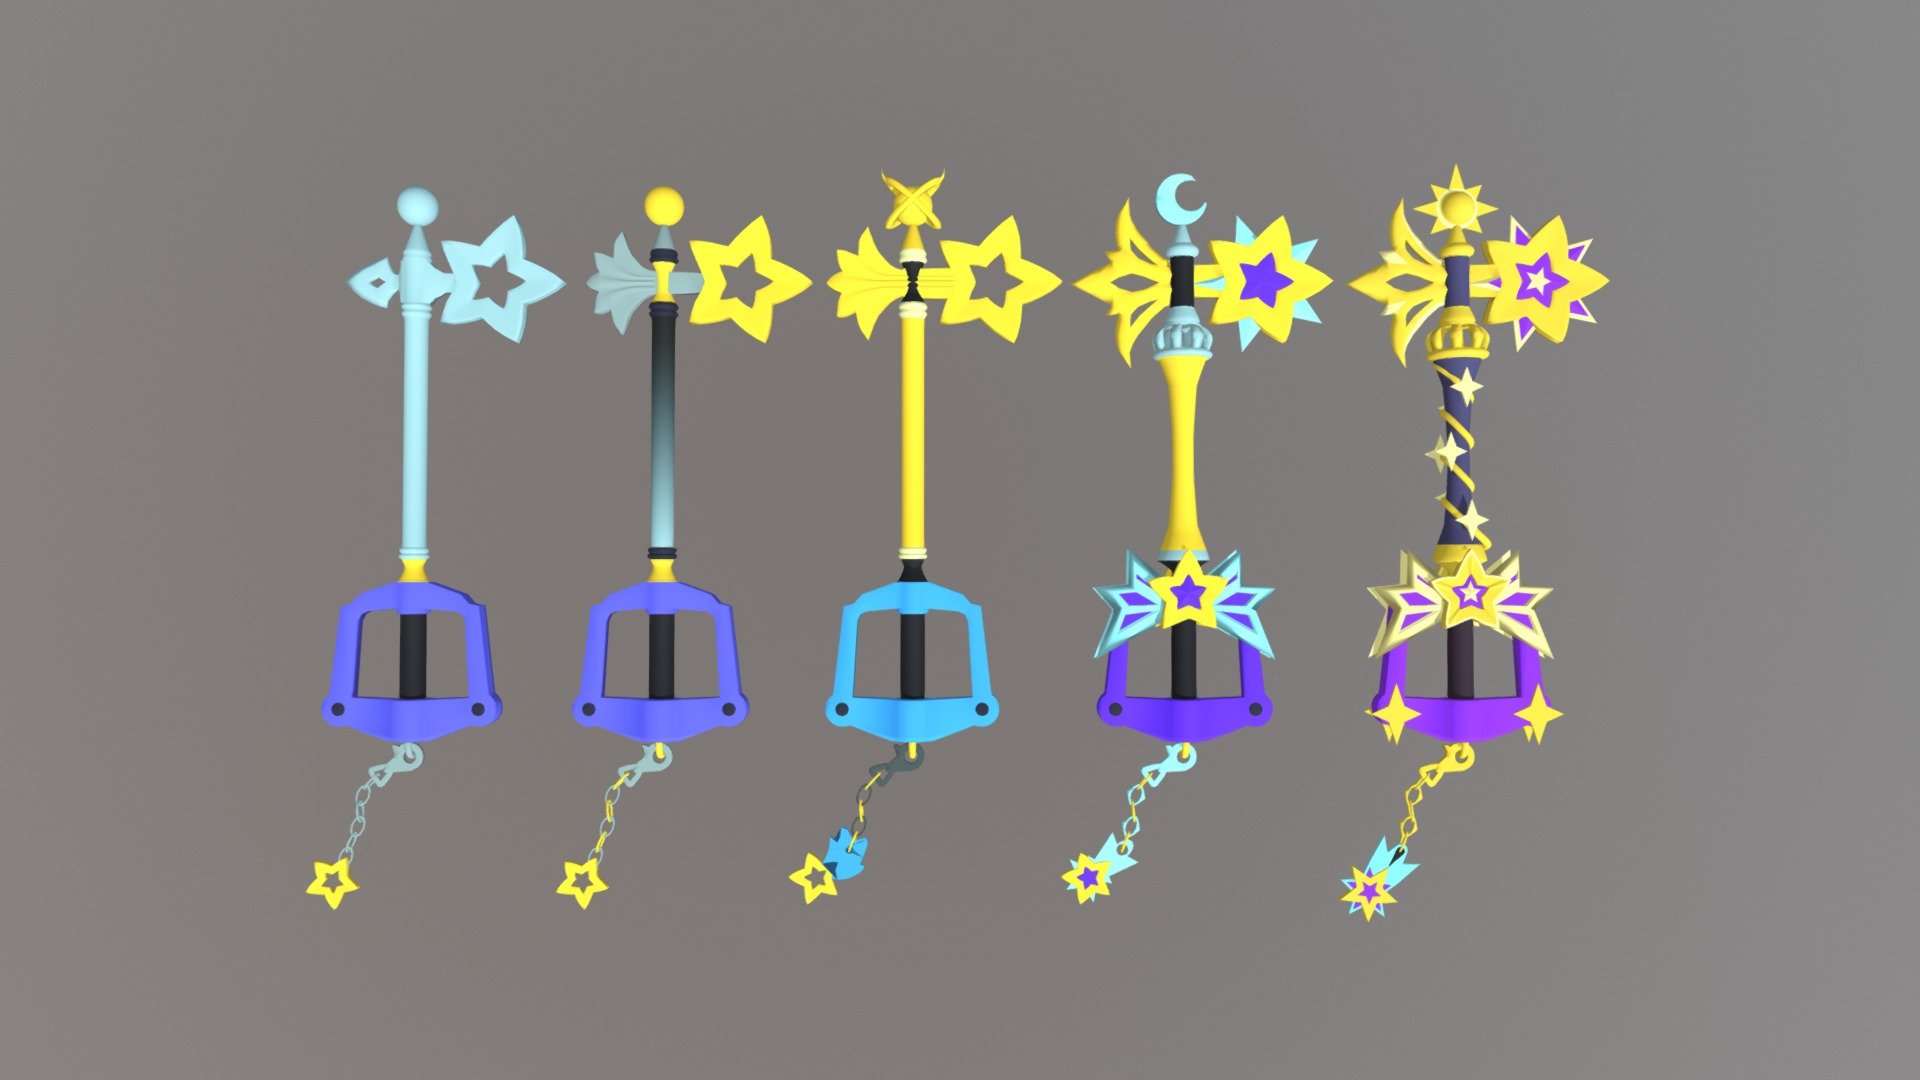 All versions of Starlight Keyblade